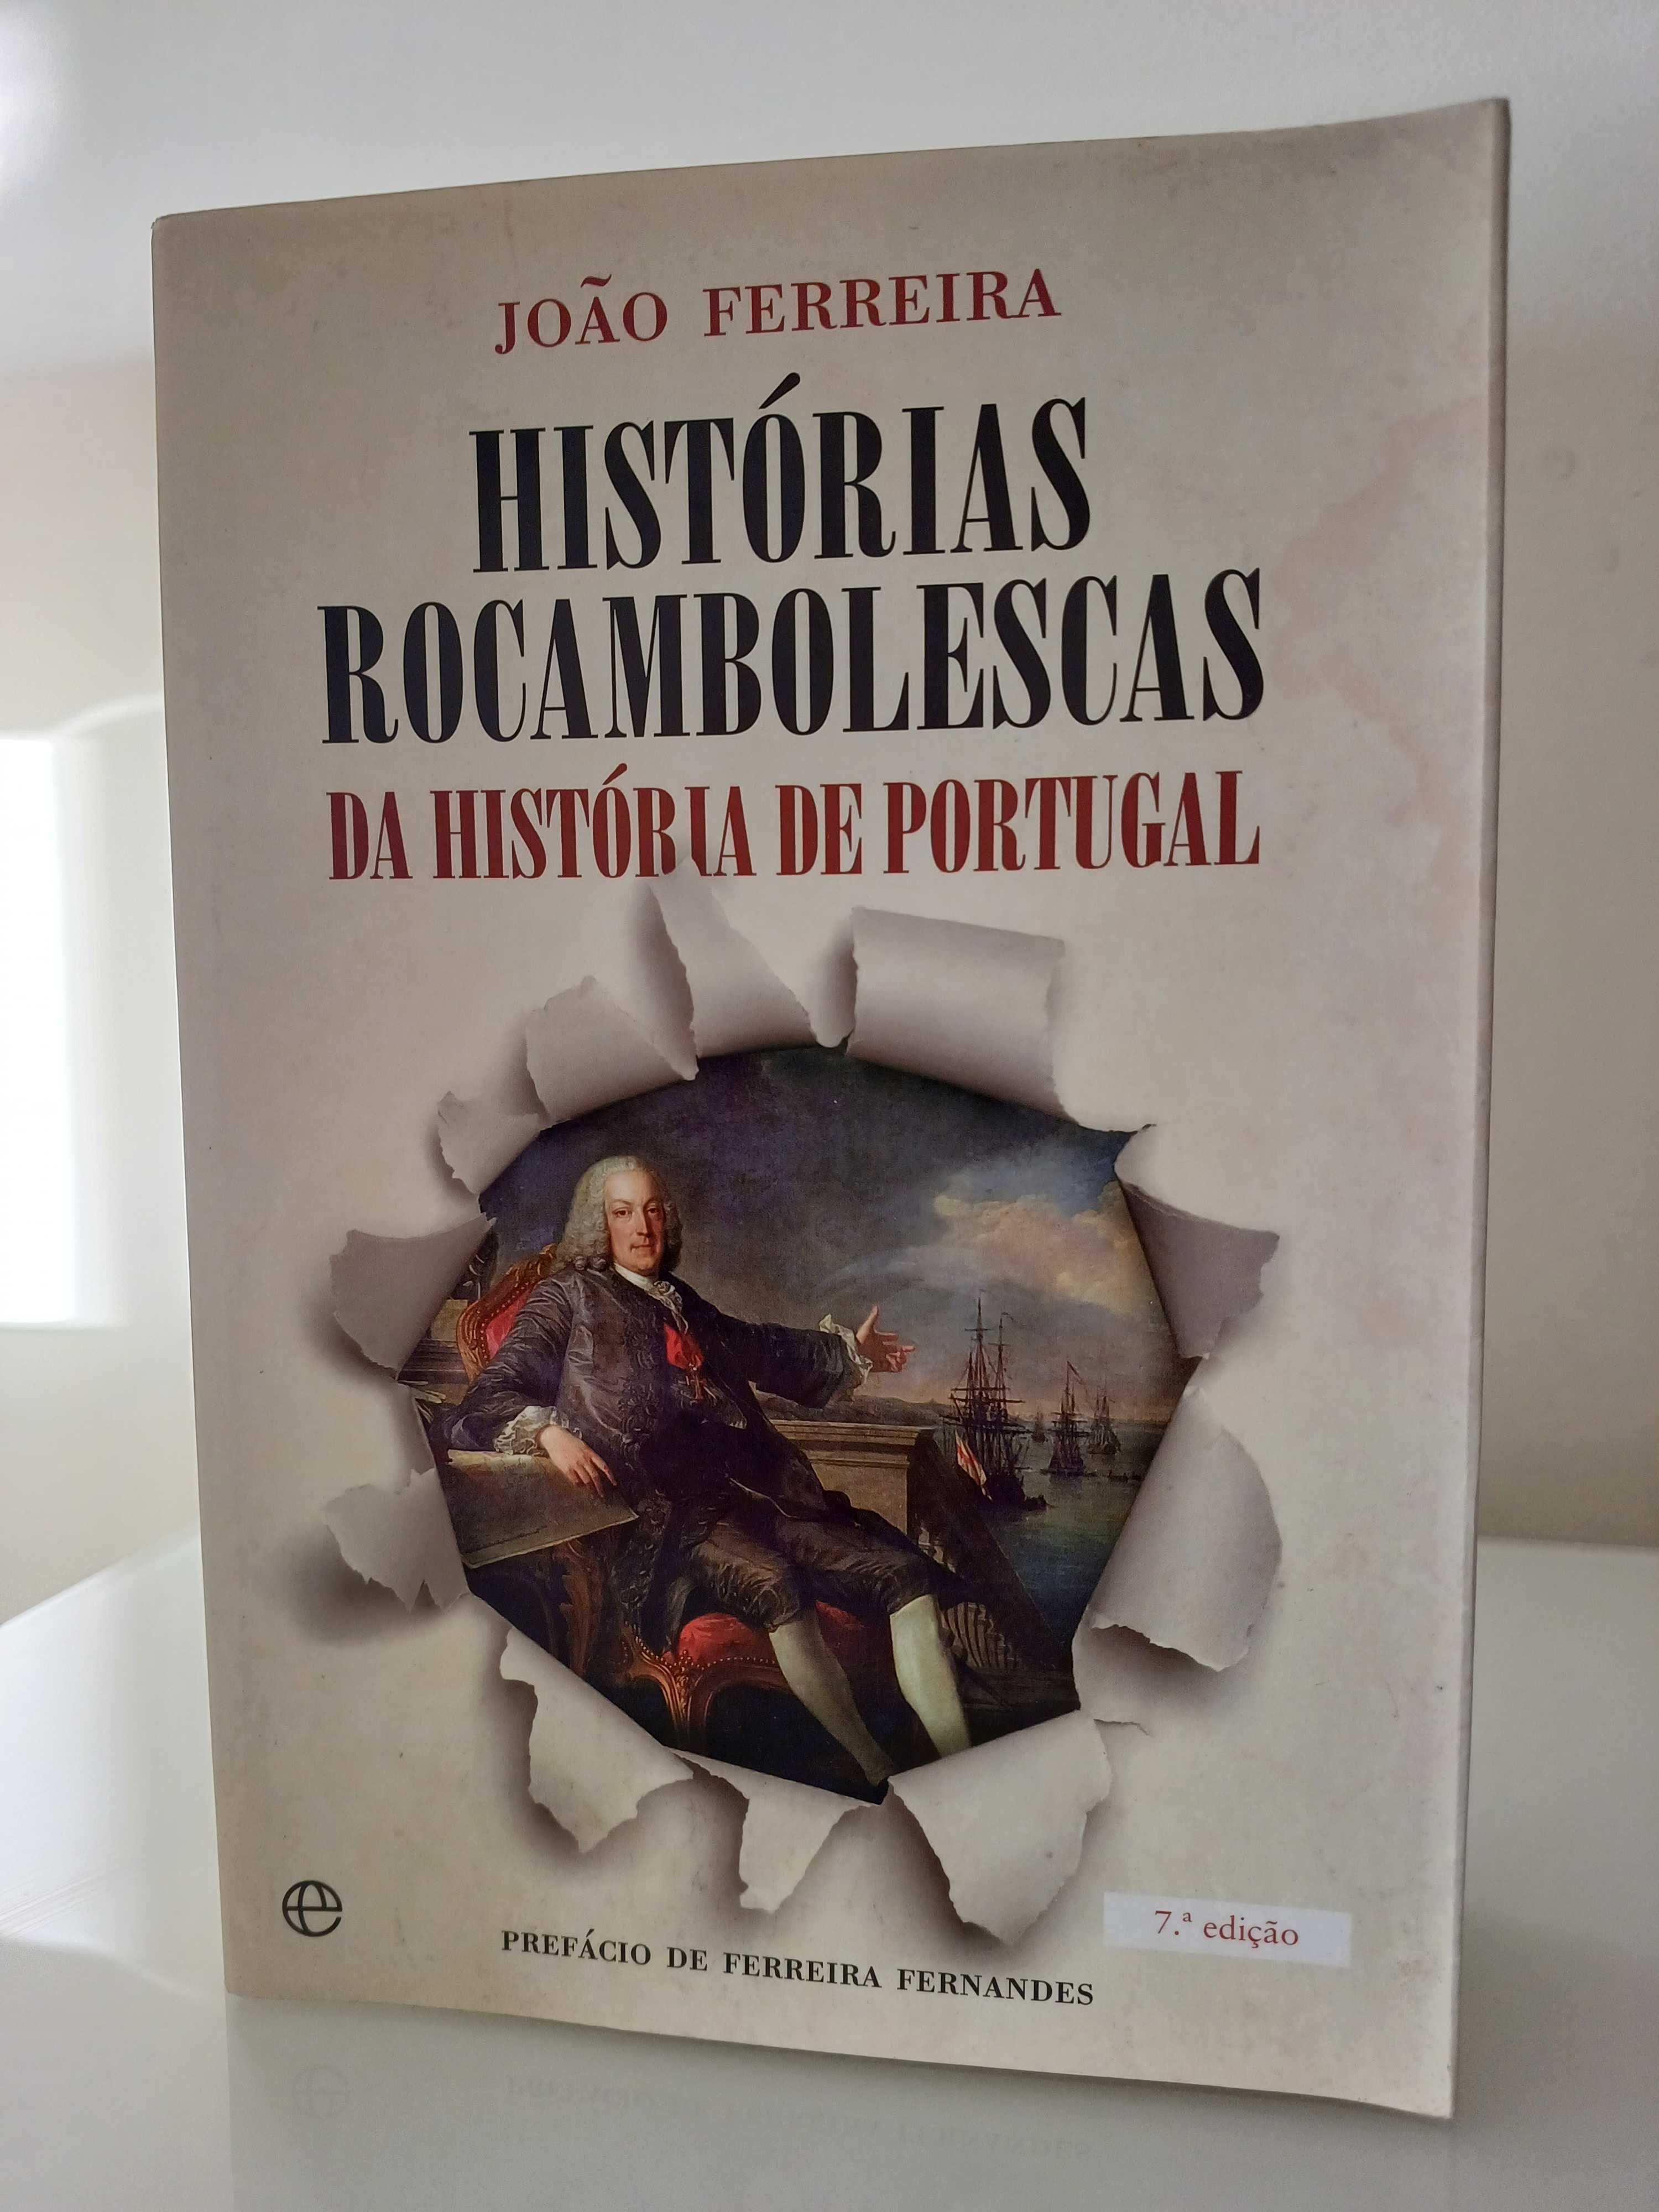 NOVO PREÇO - Histórias Rocambolescas da História de Portugal (como nov